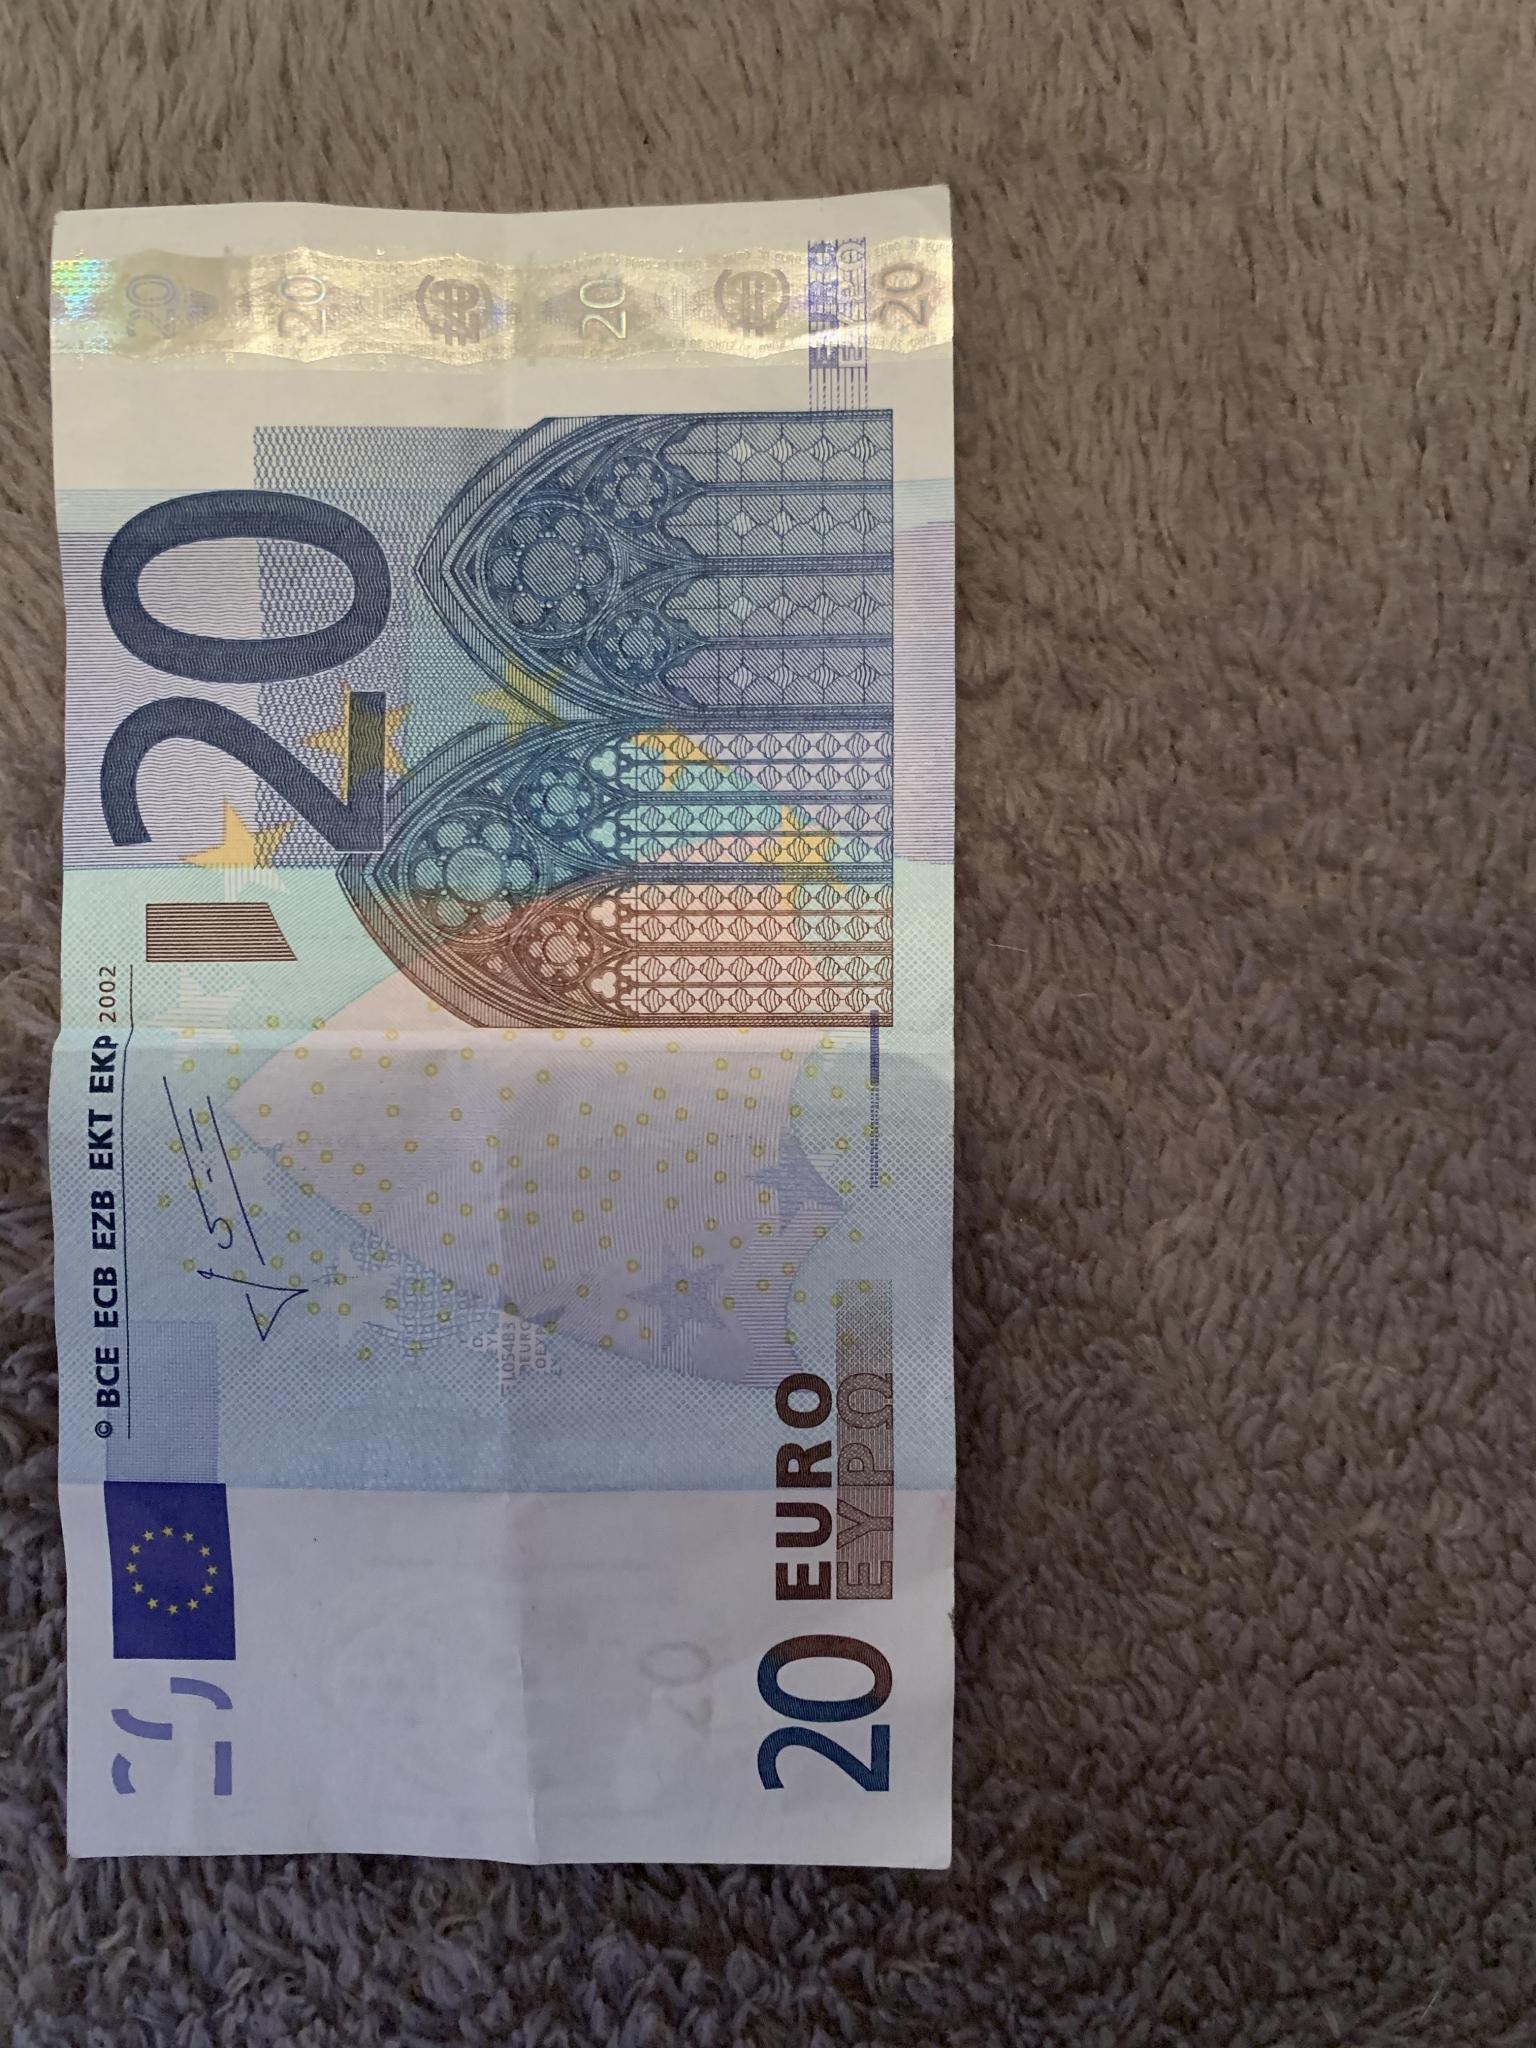 billet 20 euros avec un défaut - Fautés - Forums